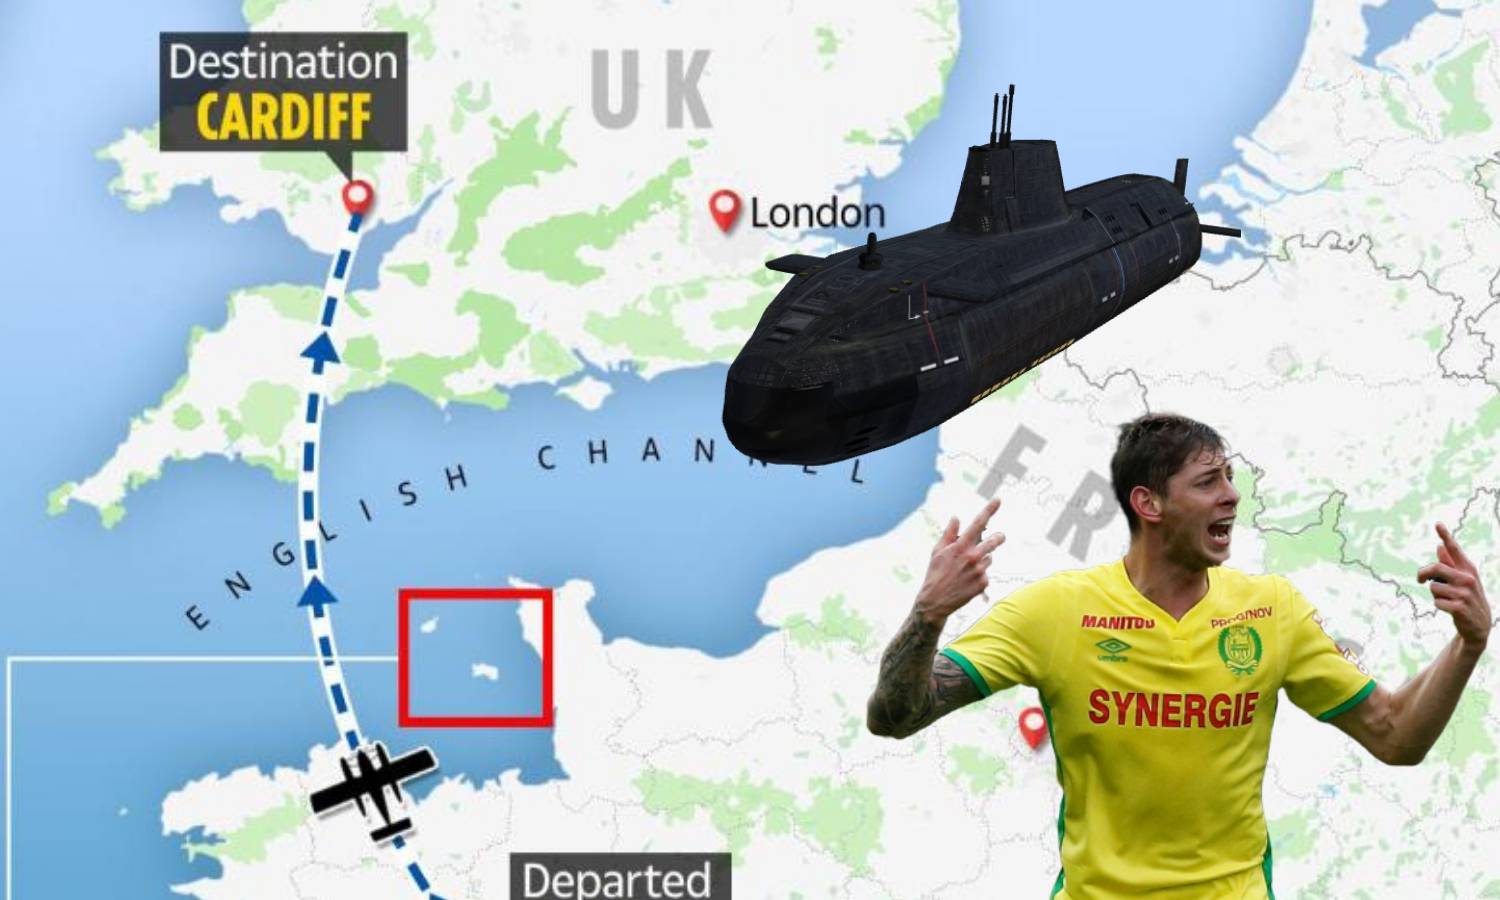 Podmornica traži nestali avion: Dobra je šansa da ćemo ga naći